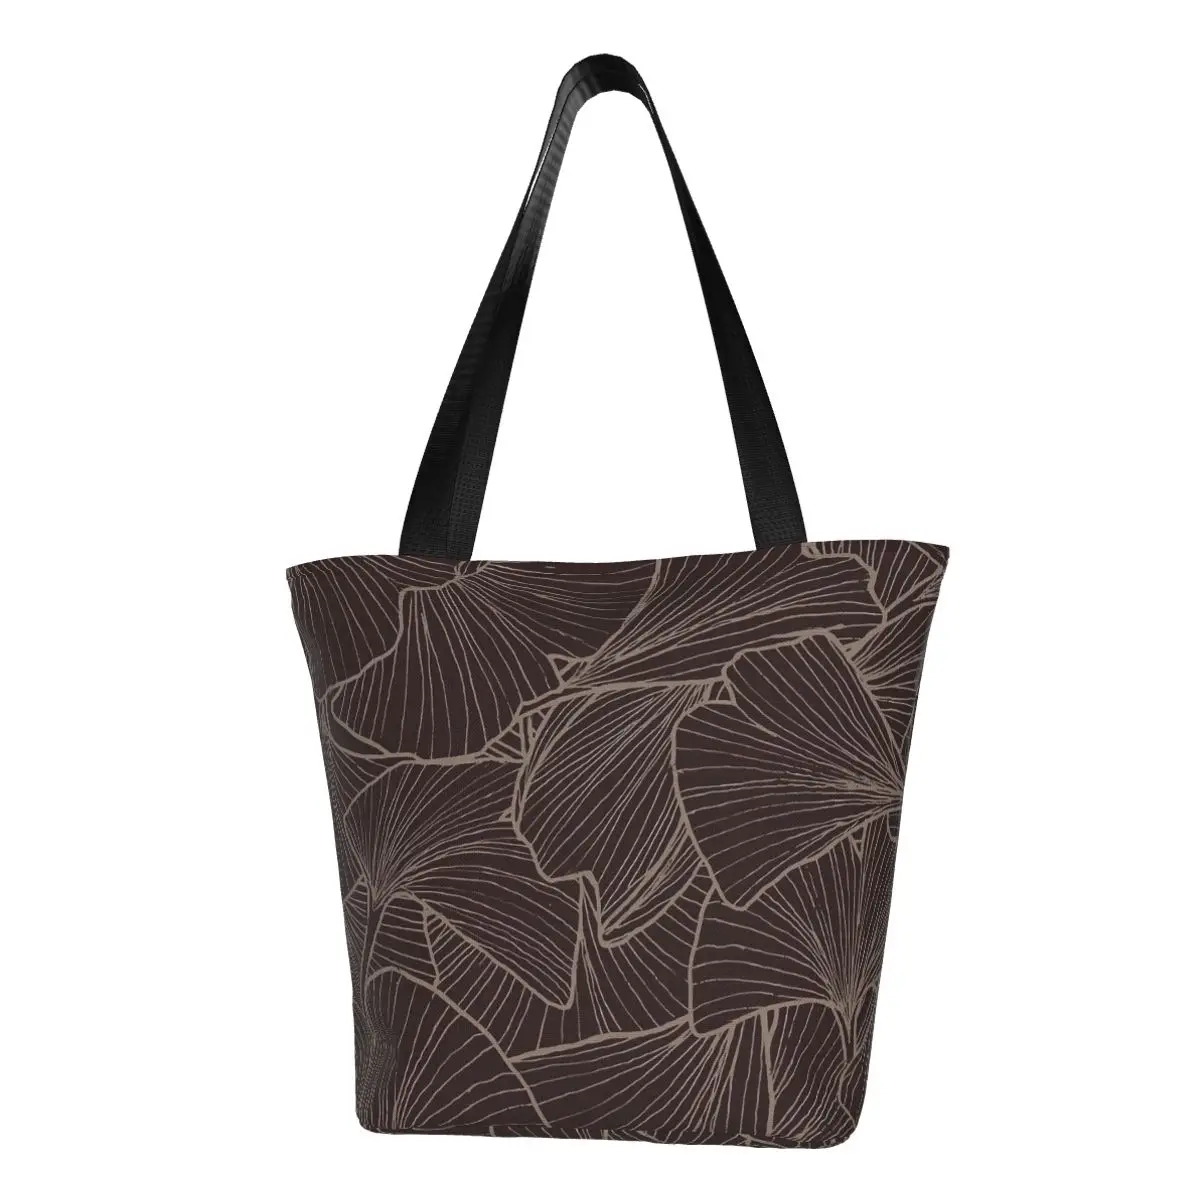 

Сумка-шоппер Ginkgo Biloba с принтом листьев, сумки для колледжа, женские сумки для покупок на заказ, крутая тканевая сумка-тоут